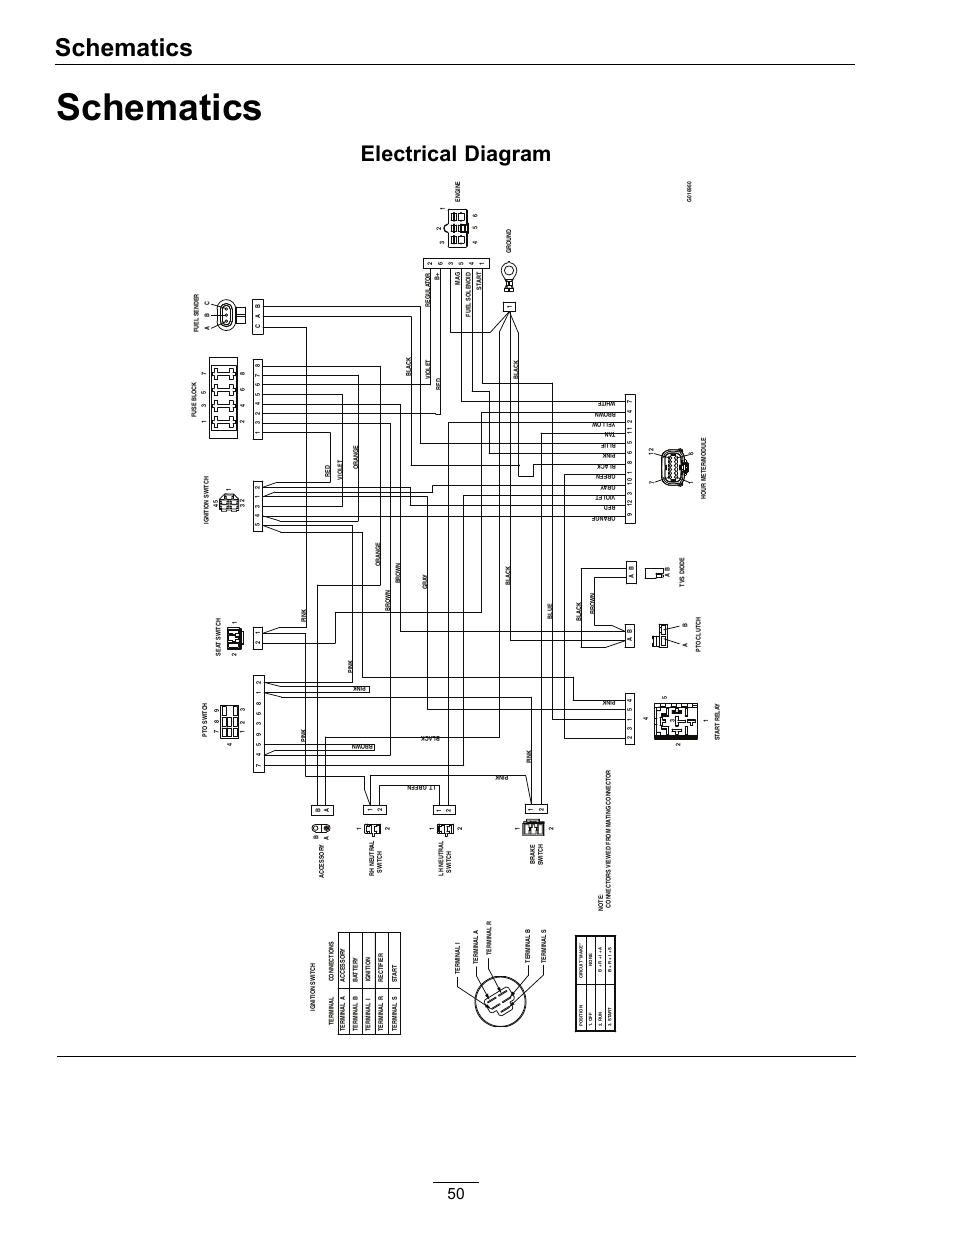 wiring diagram for liftmaster garage door opener with 3 screws